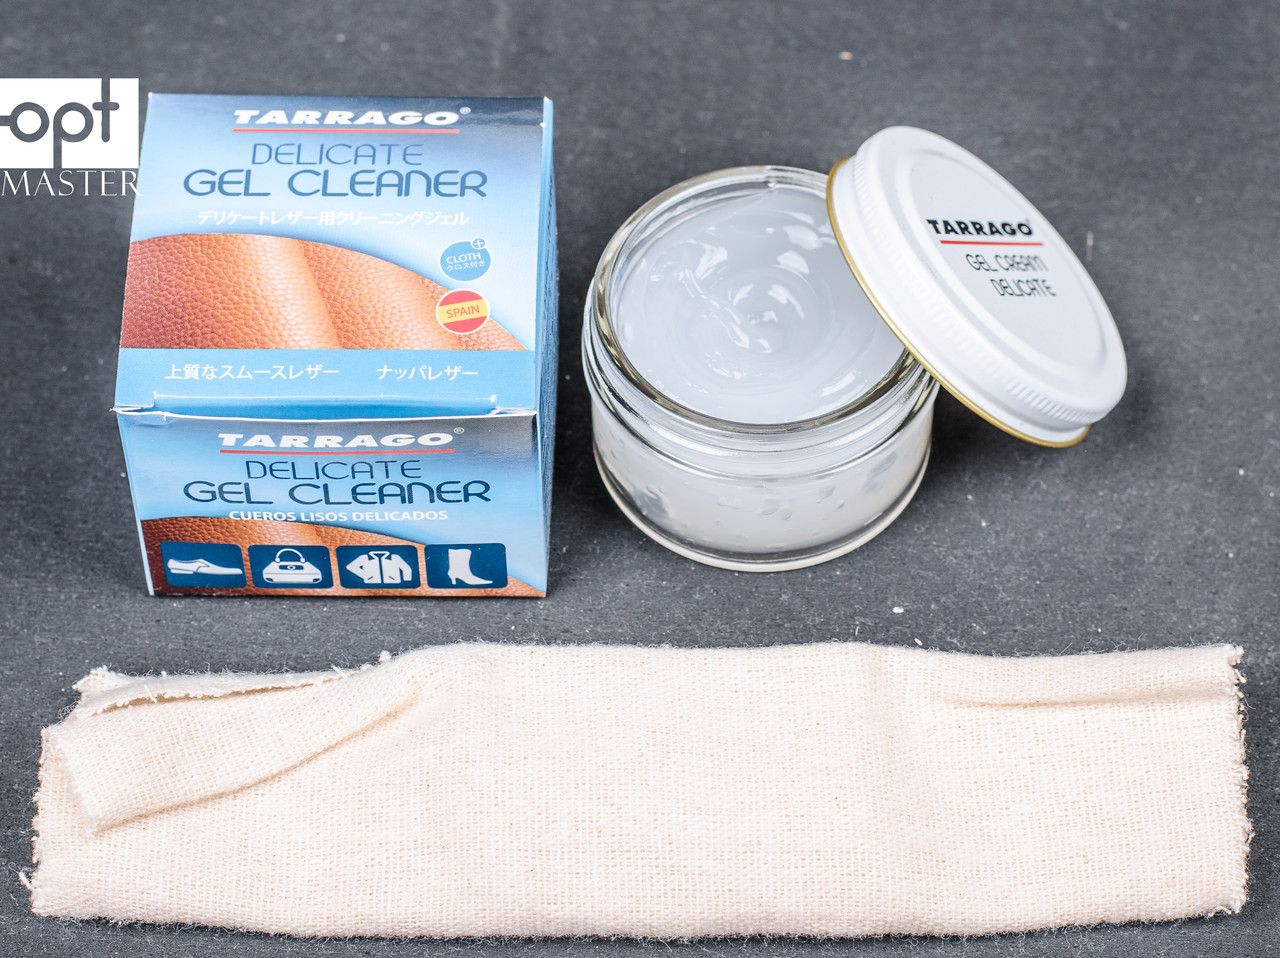 Очищающий гель для деликатных кож Tarrago Delicate Gel Cleaner Jar, 50 мл,  бесцветный TCT05: купить, продажа, цена в Украине. крема и пропитки для  обуви от компании "Светловодск-Комплект" - 629884198